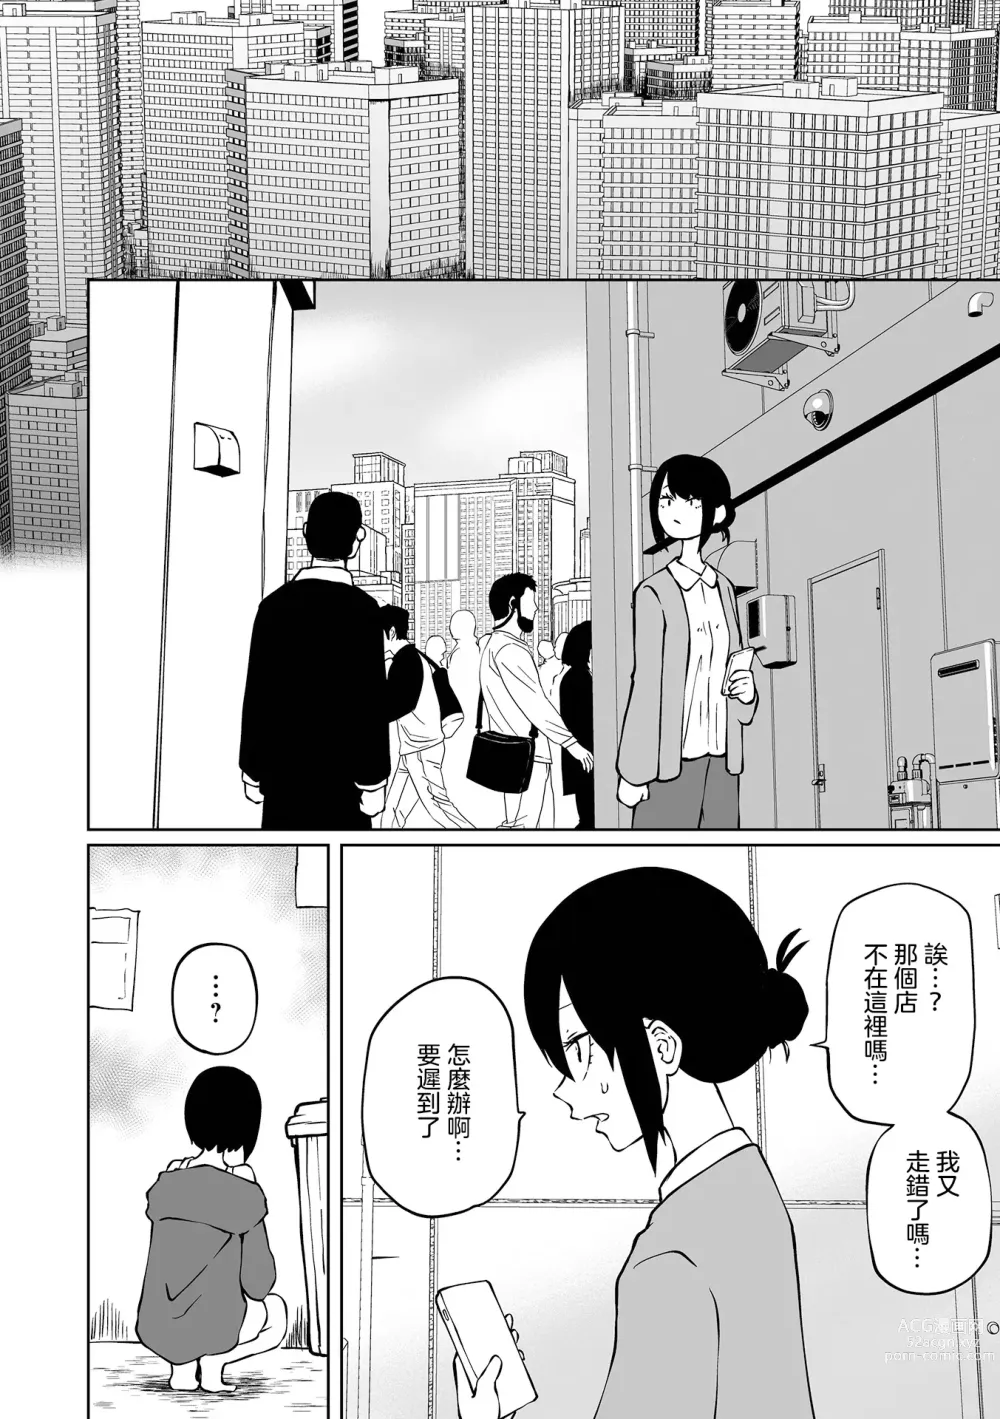 Page 5 of manga 地下生活